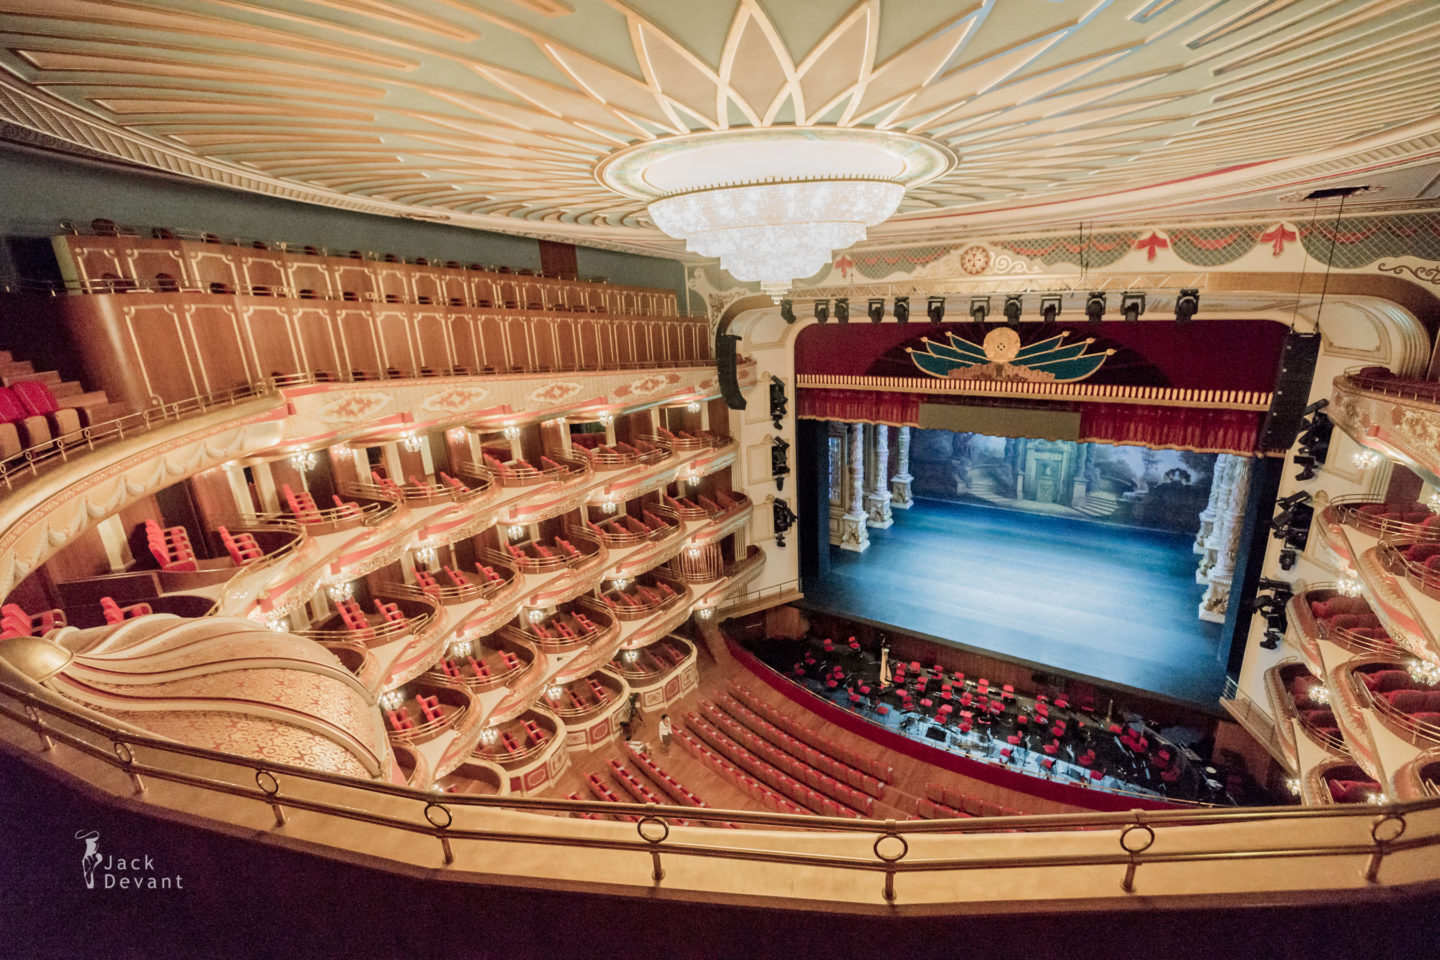 Театр оперы и балета астана опера